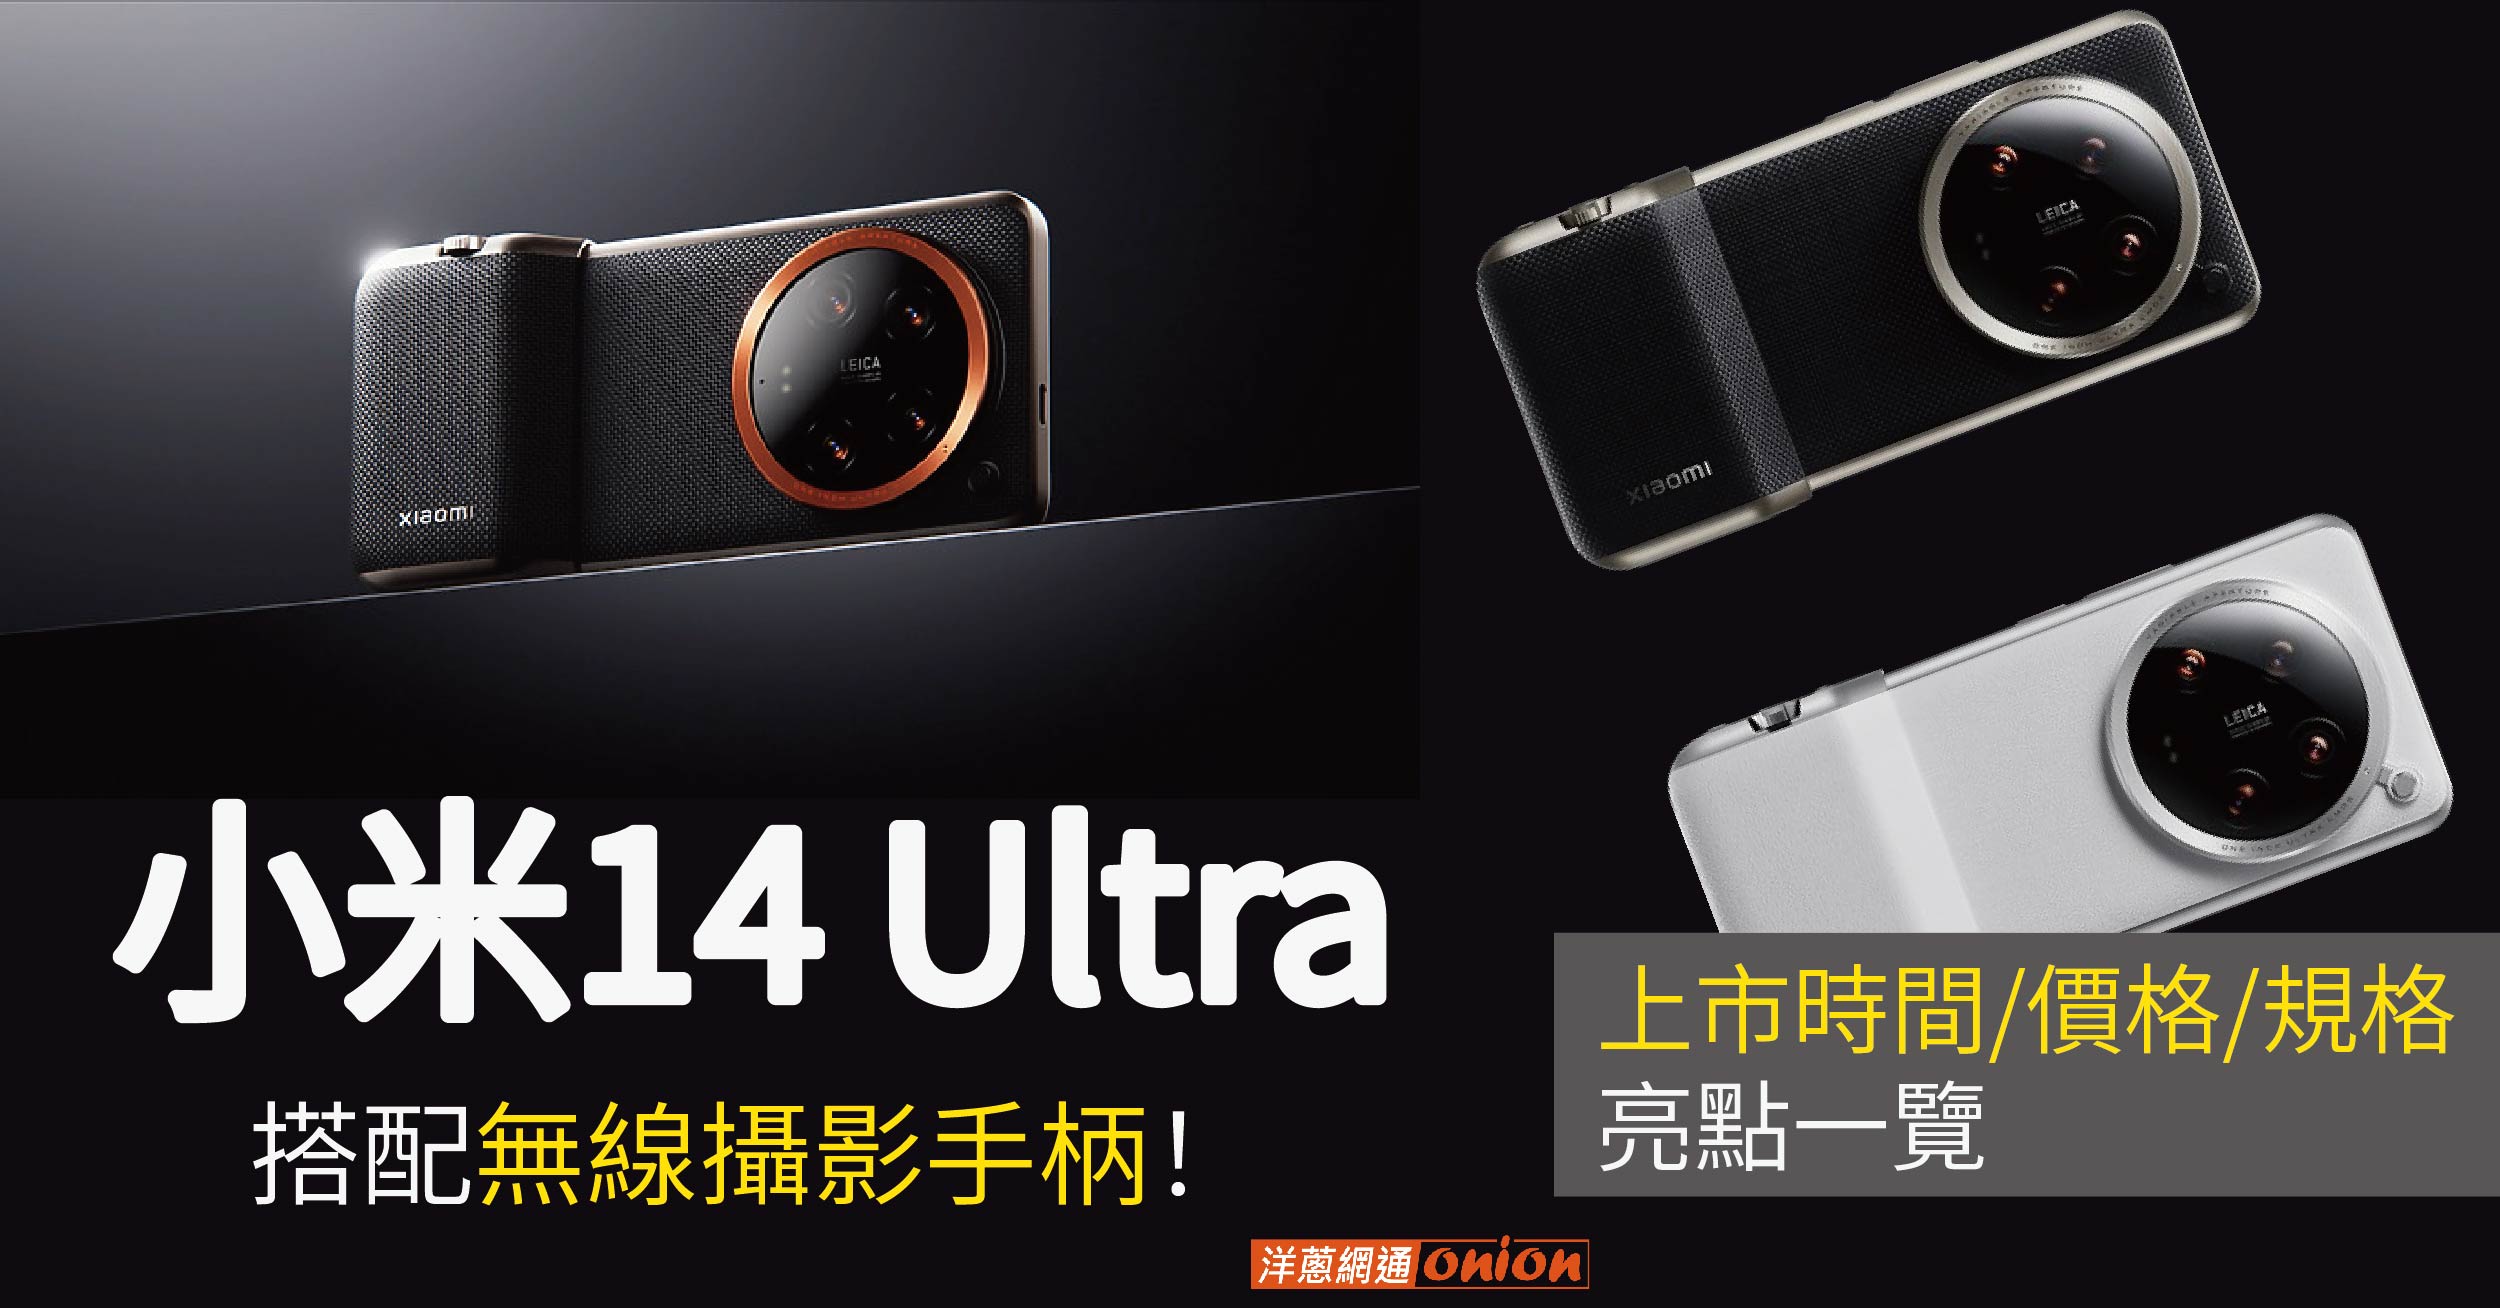 小米14 Ultra上市時間/價格/規格亮點一覽，搭配無線攝影手柄！